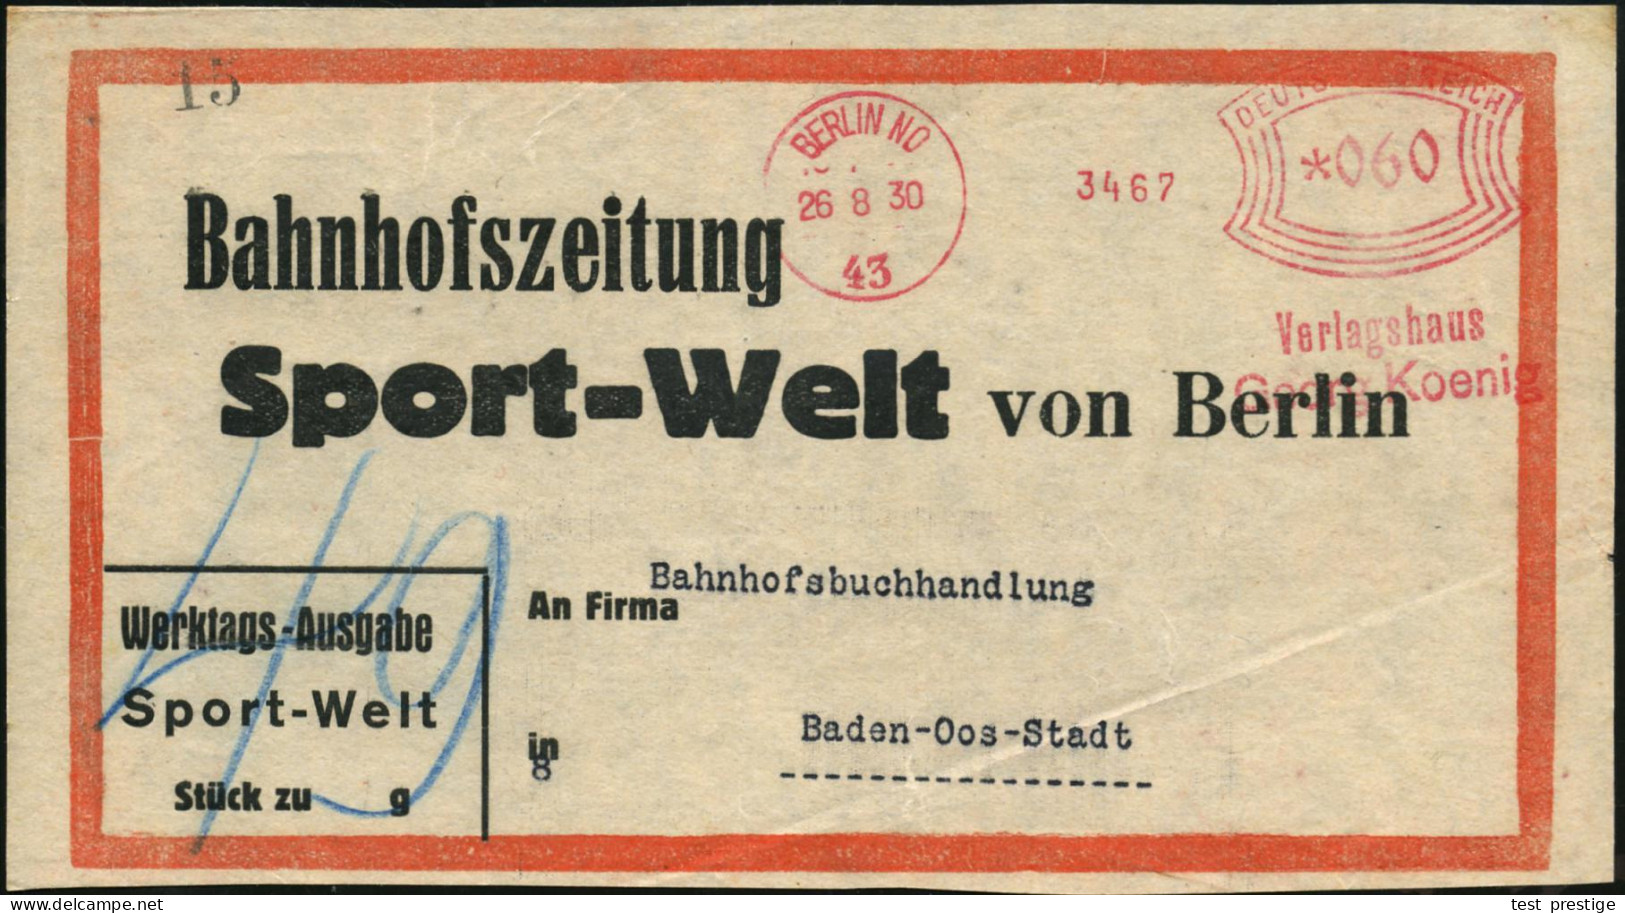 BERLIN NO/ 43/ Verlagshaus/ Georg Koenig 1930 (26.8.) AFS Francotyp "Bogenrechteck" *060 Pf. Auf Vorbindezettel: Bahnhof - Sonstige